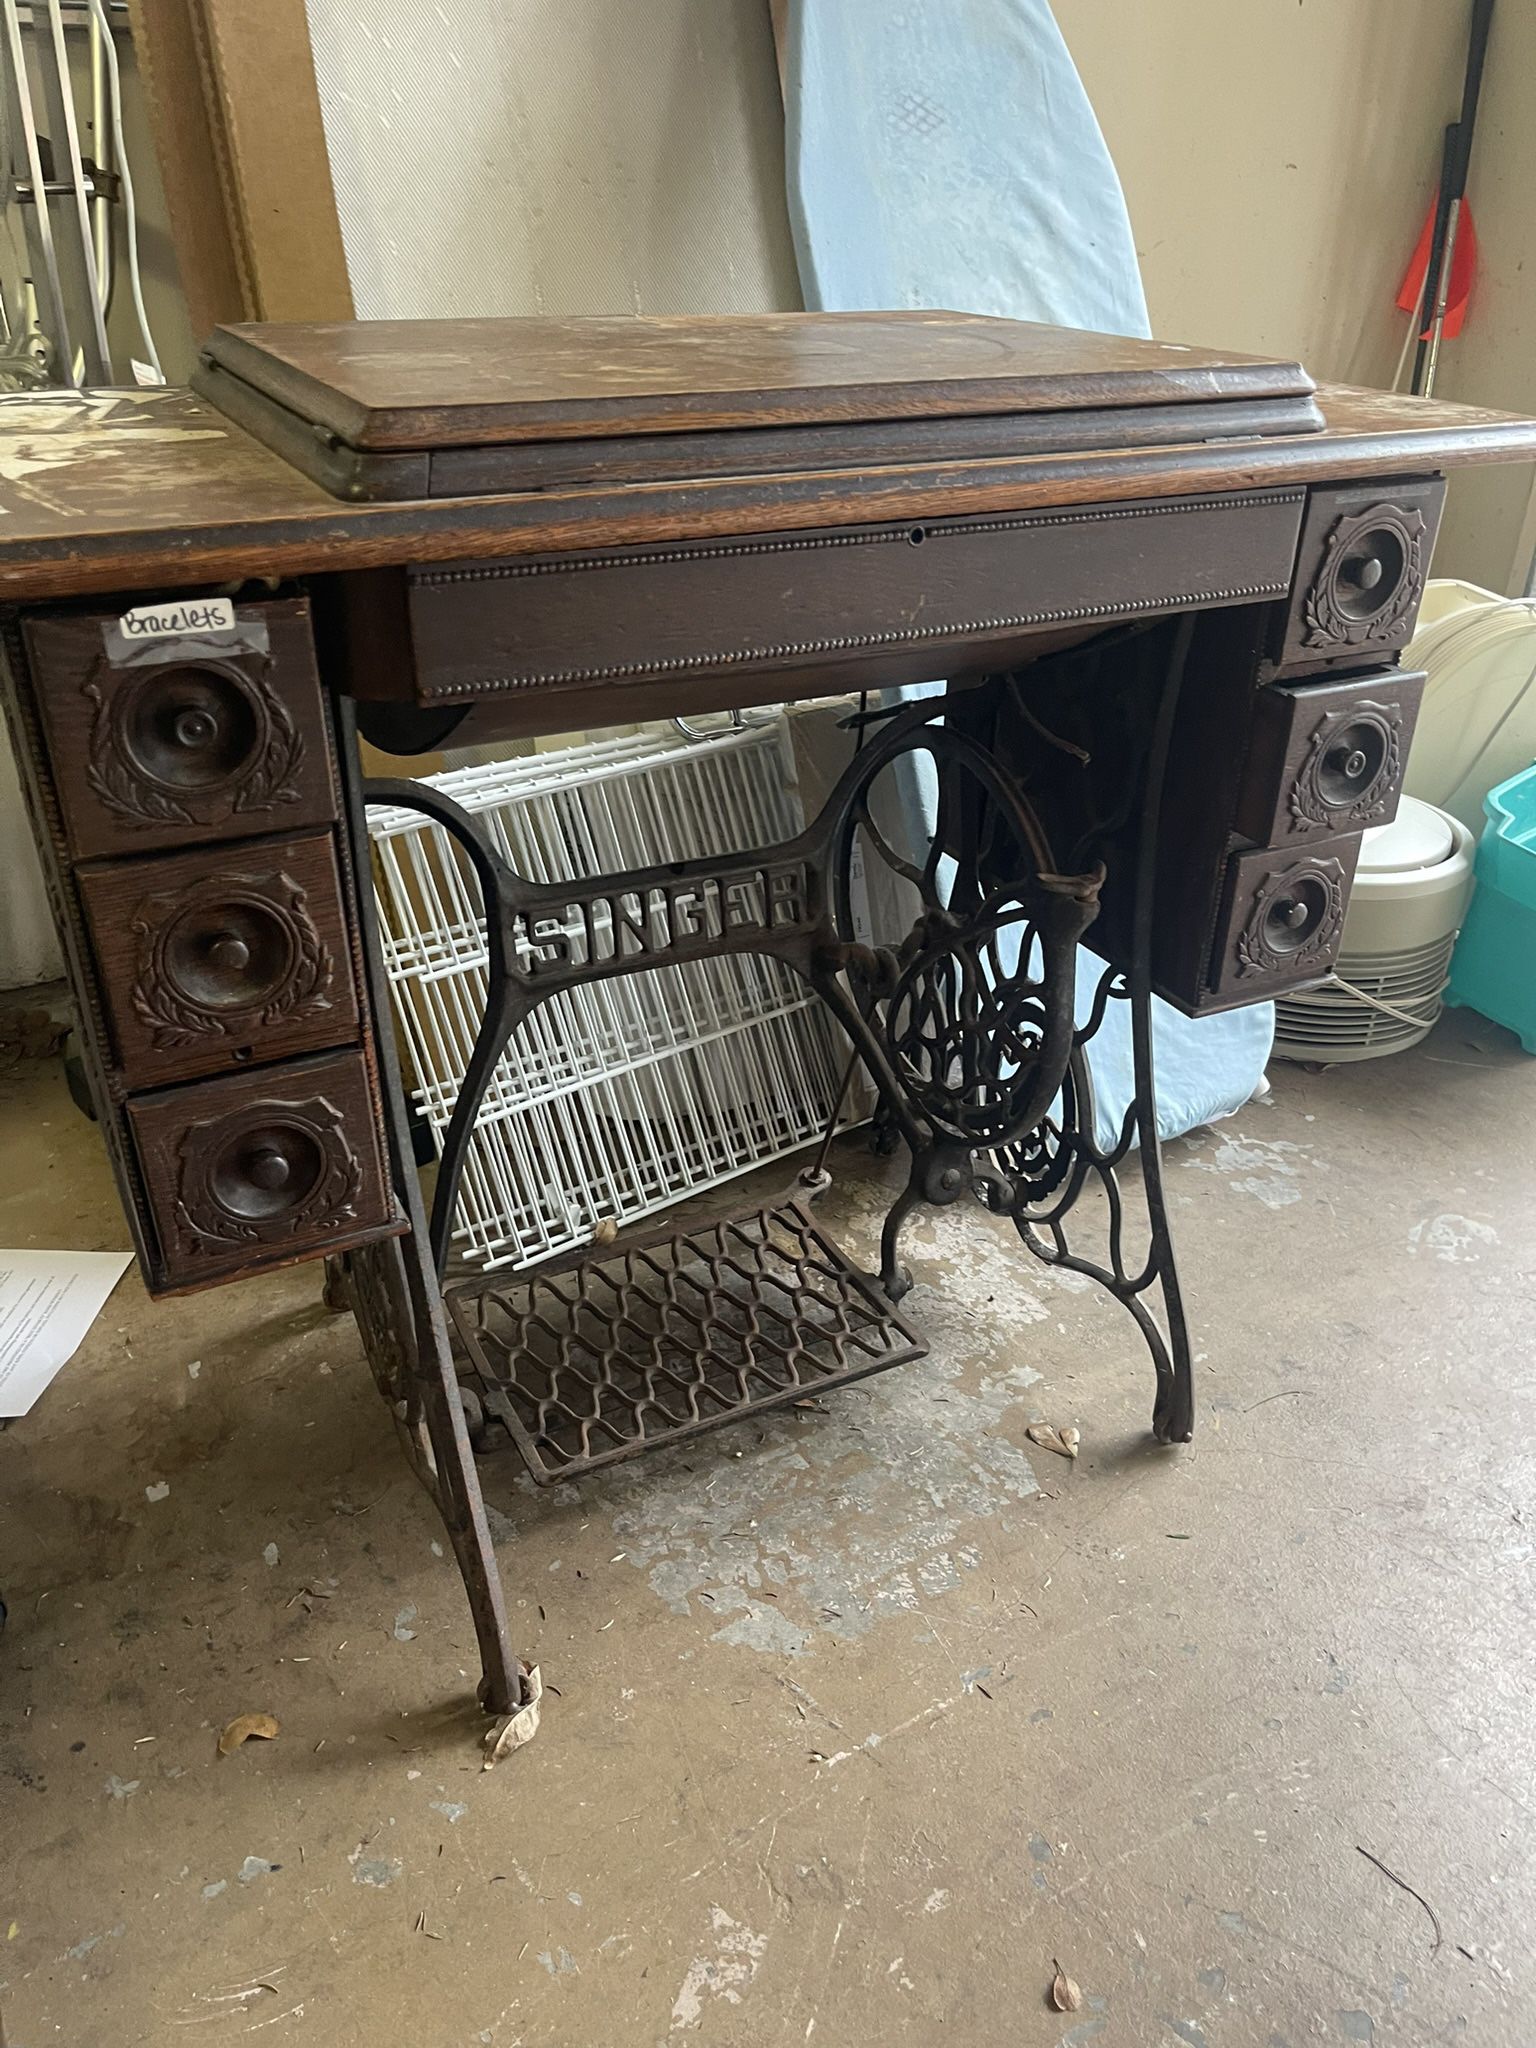 Vintage Sewing Machine - $45